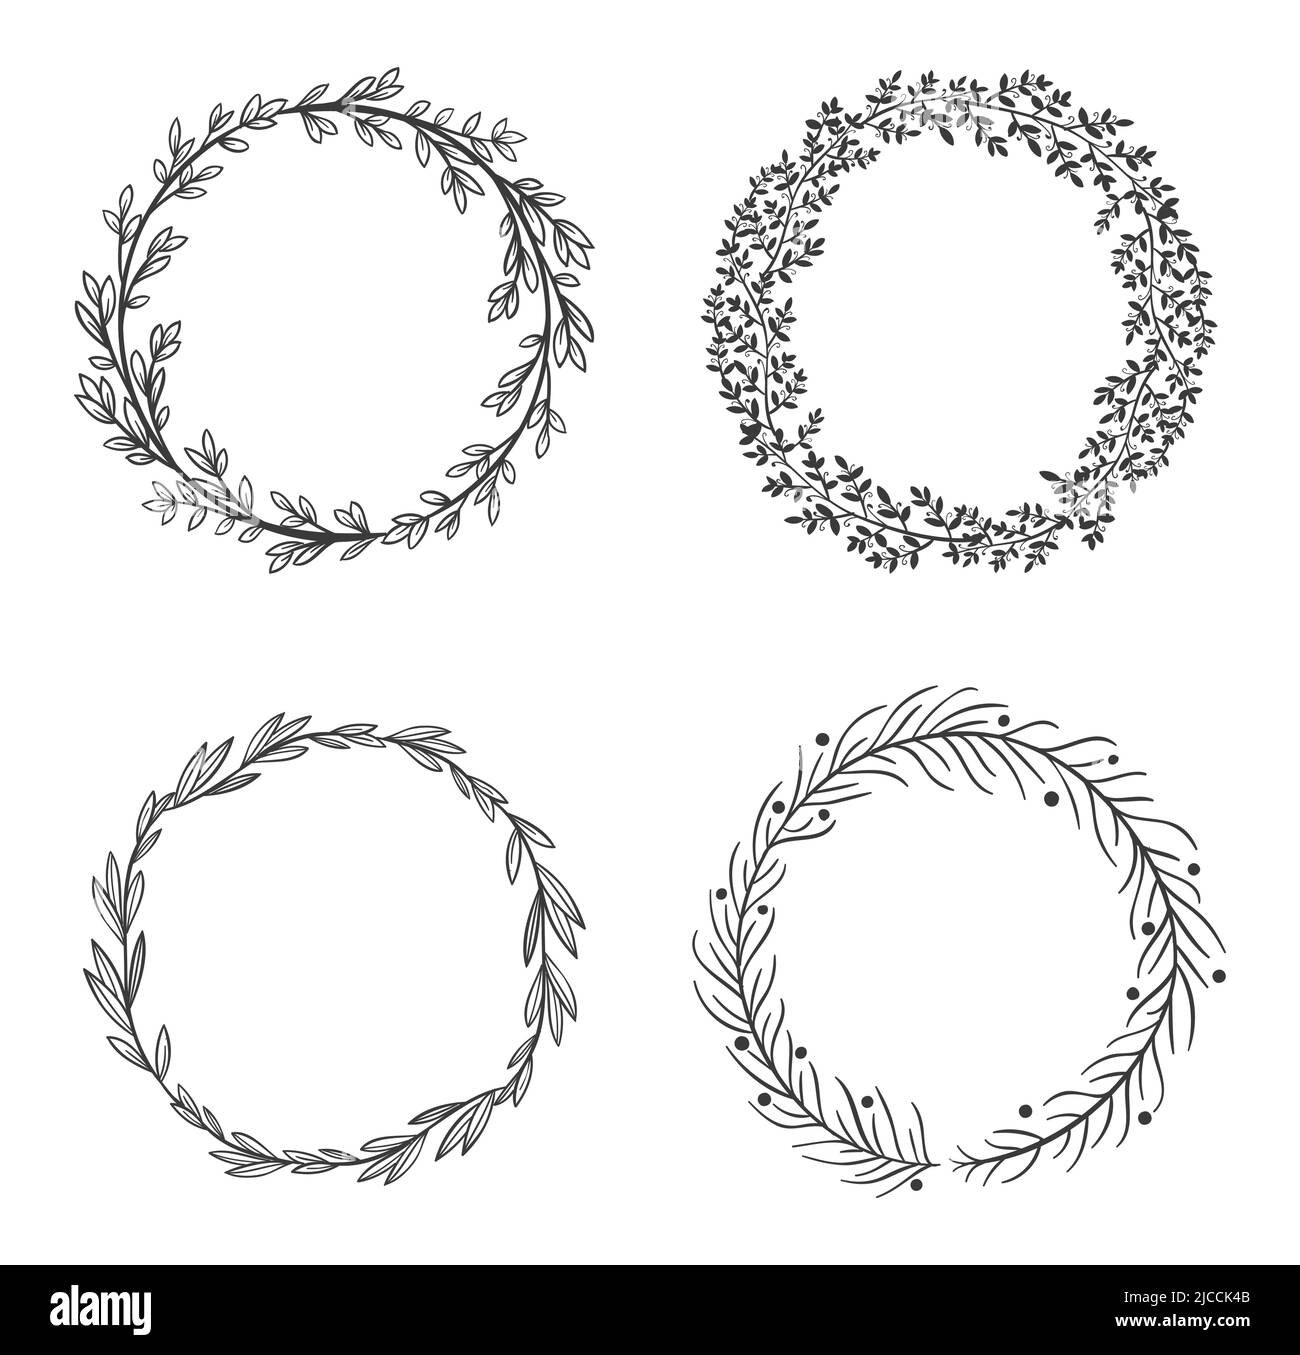 Kreisförmige Lamellenrahmen. Schwarze runde natürliche Bordüren, Blumenkranz isoliert auf weiß, gesetzt. Botanische Elemente mit Laub Stock Vektor